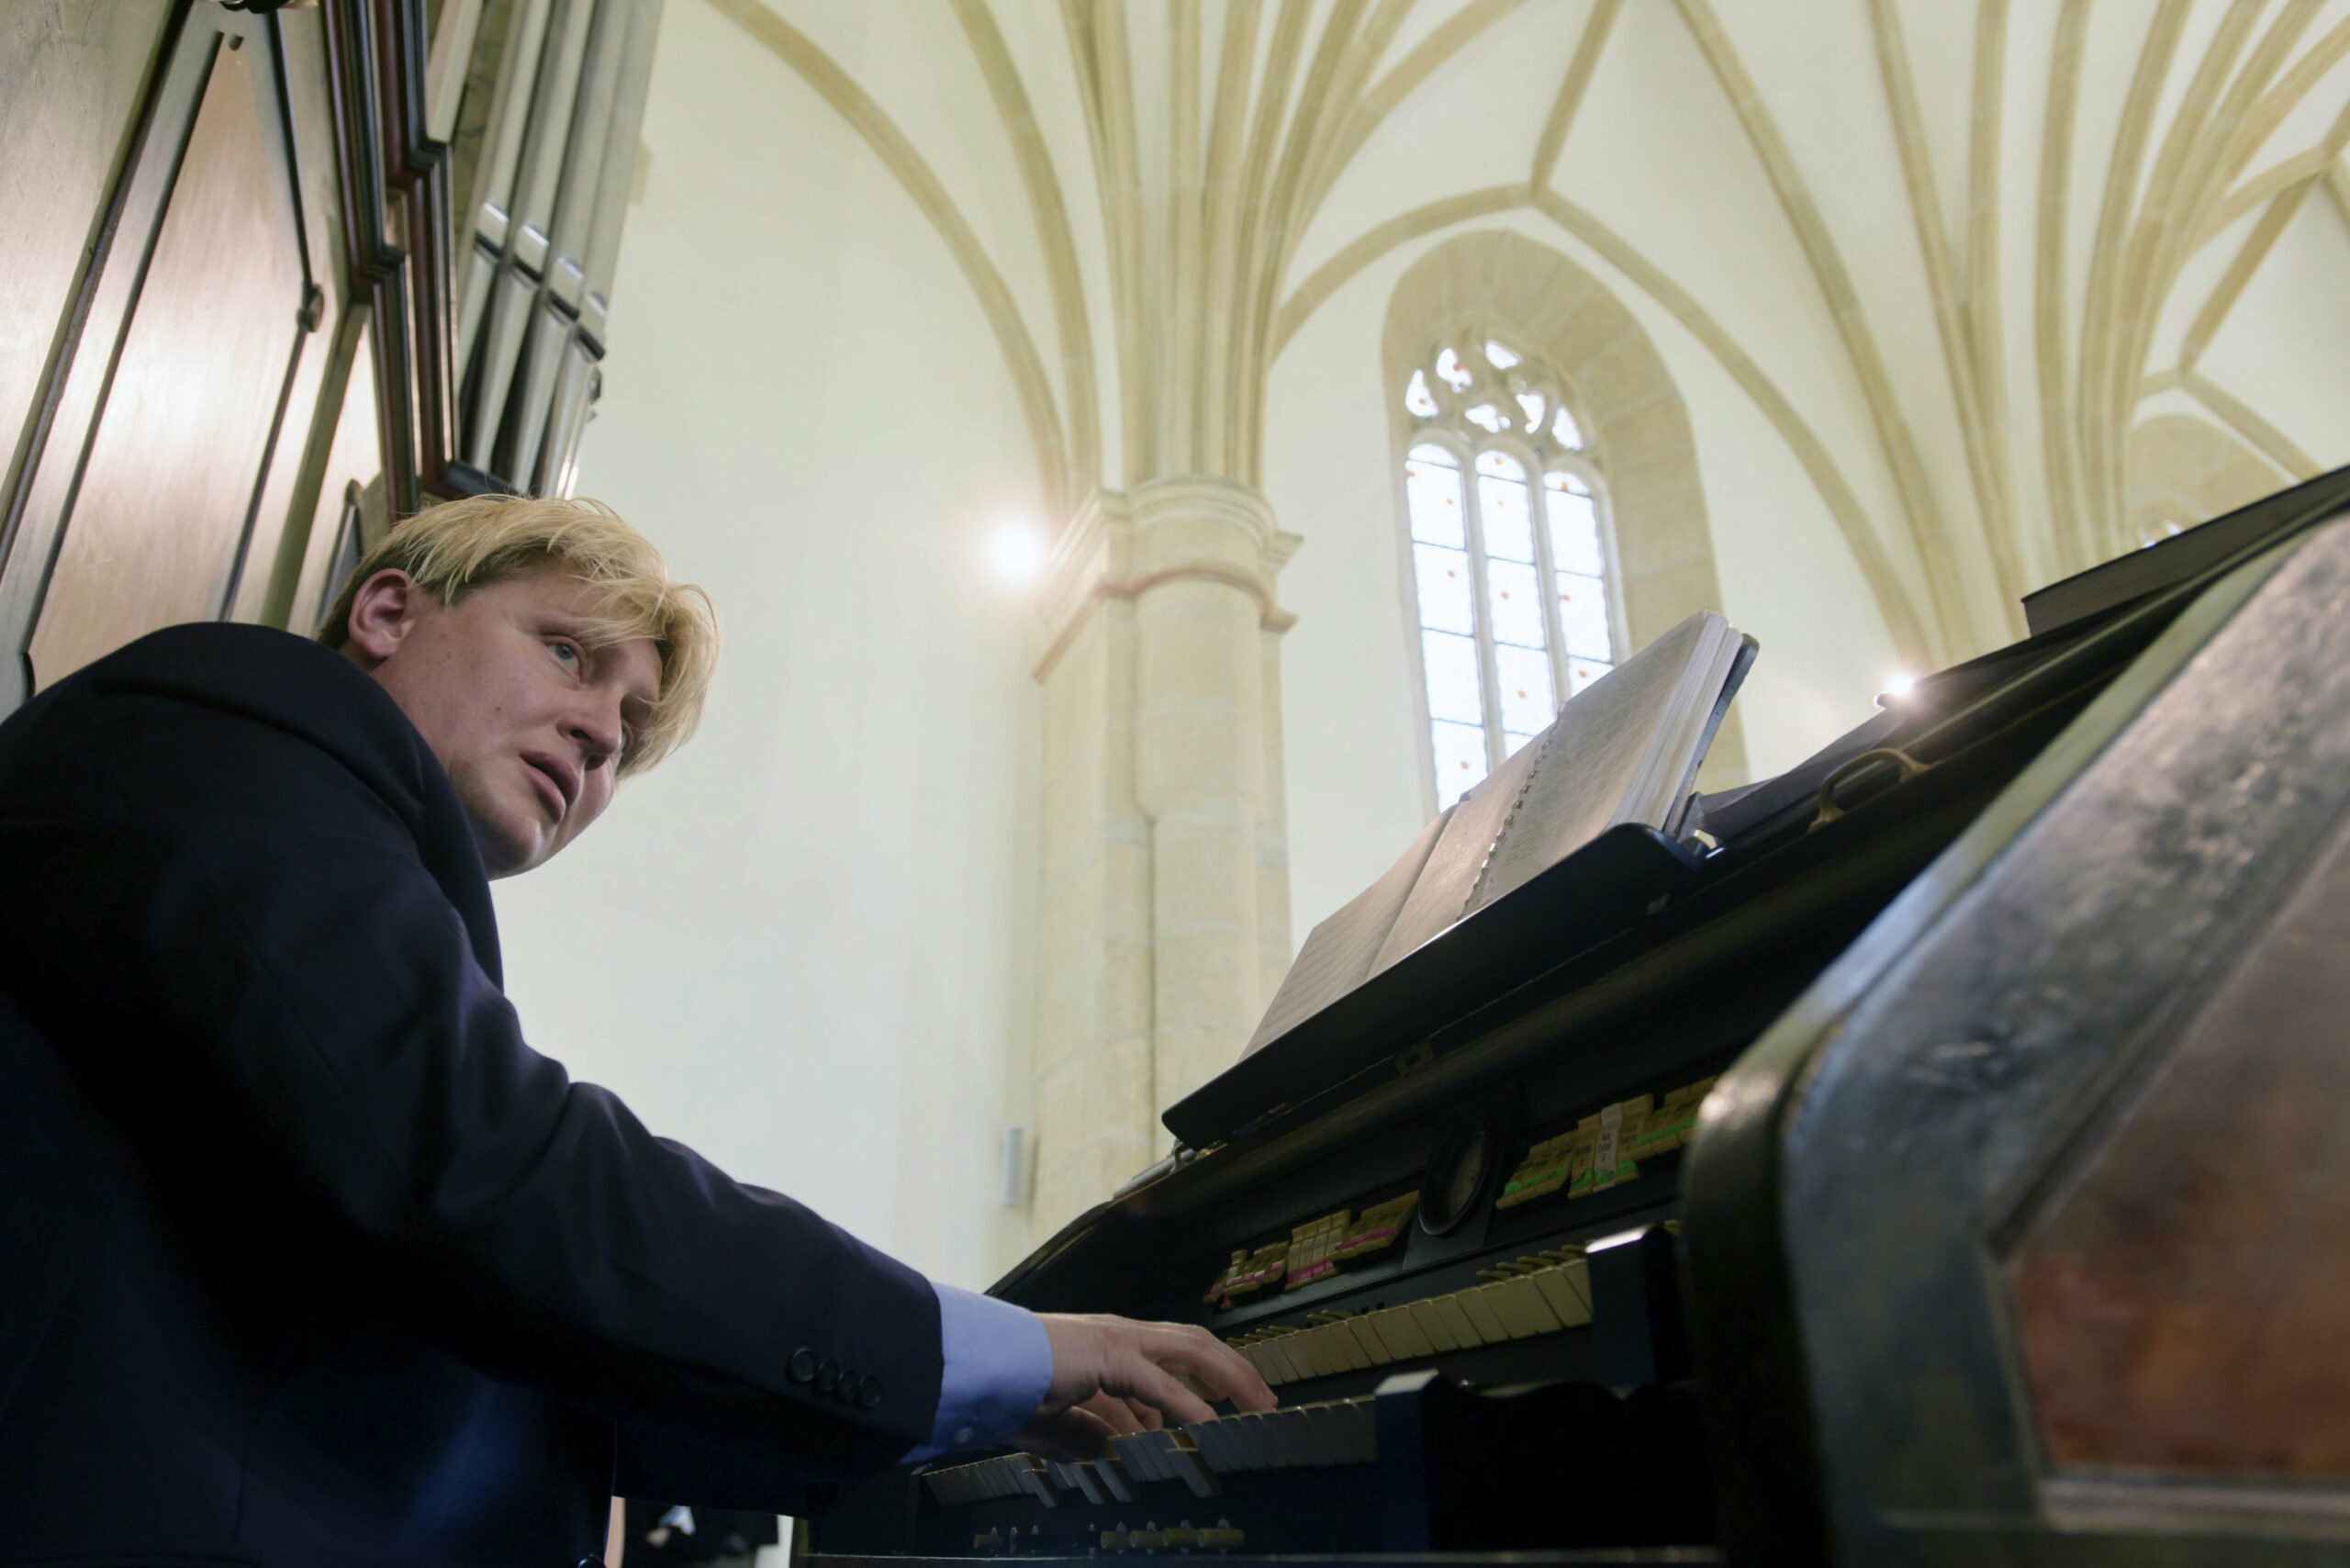 Varnus Xavér: „Meghalt az anyukám” – Gyászol az orgonaművész, újabb tragédia érte